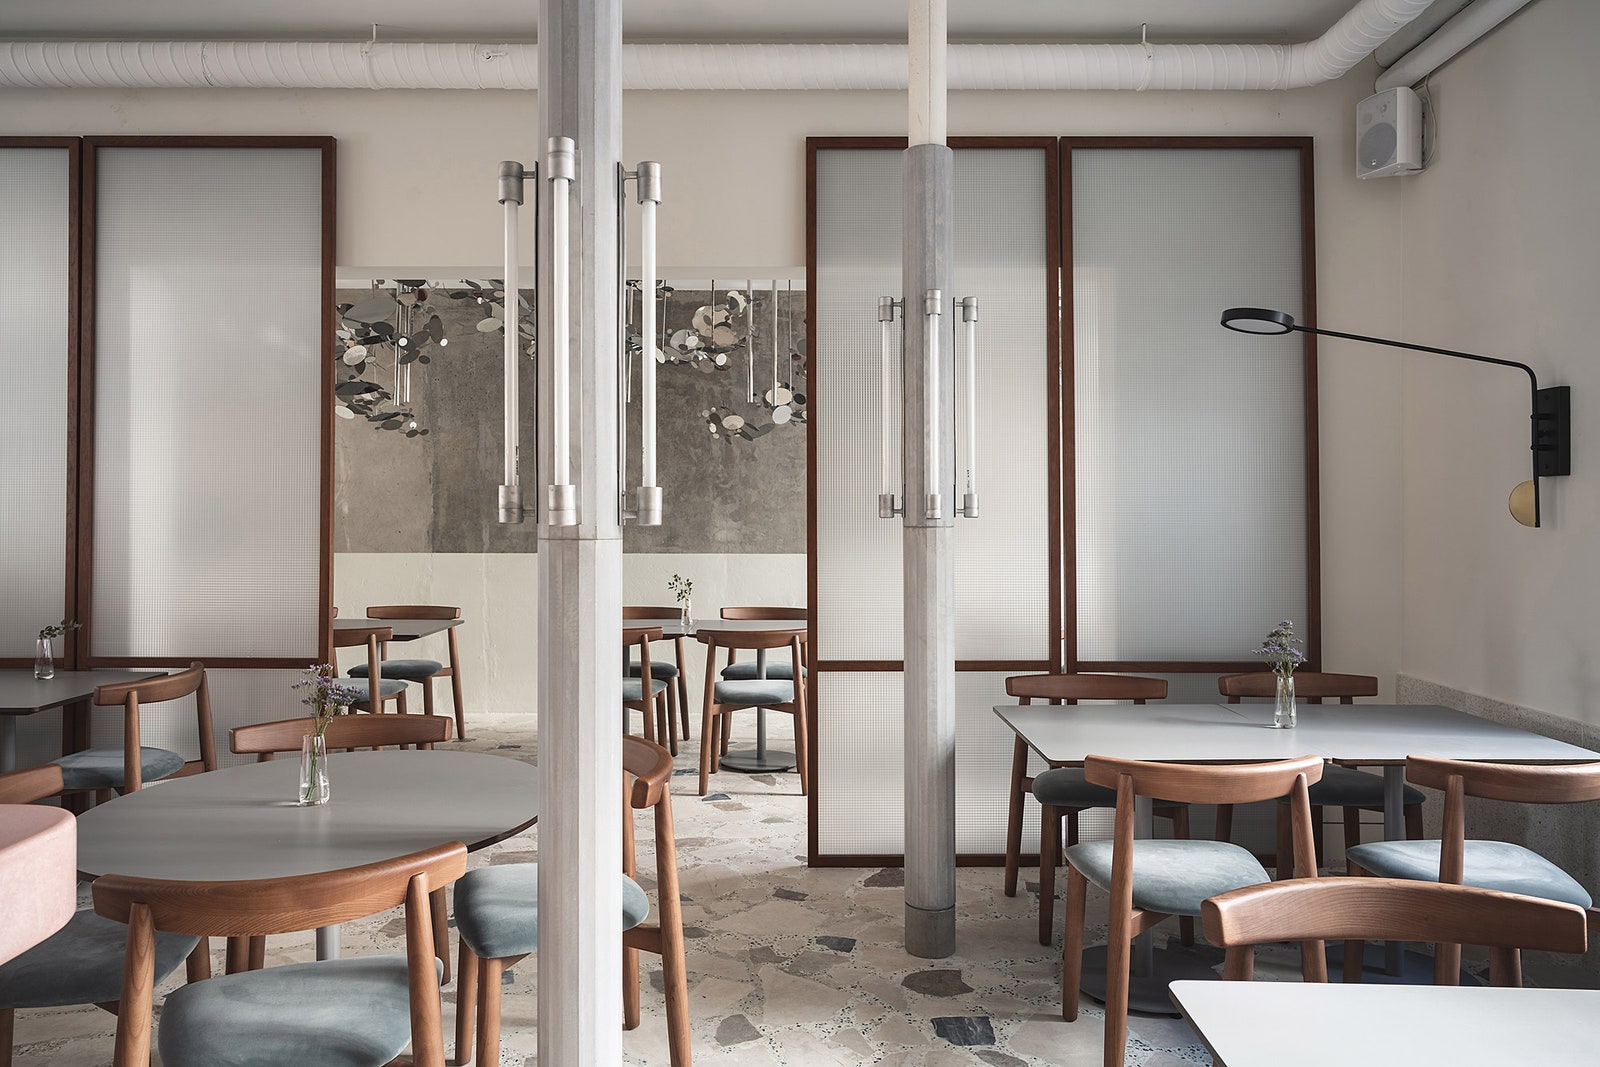 Новый ресторан Sight Coffee  Dine в СанктПетербурге  обзор интерьера фото